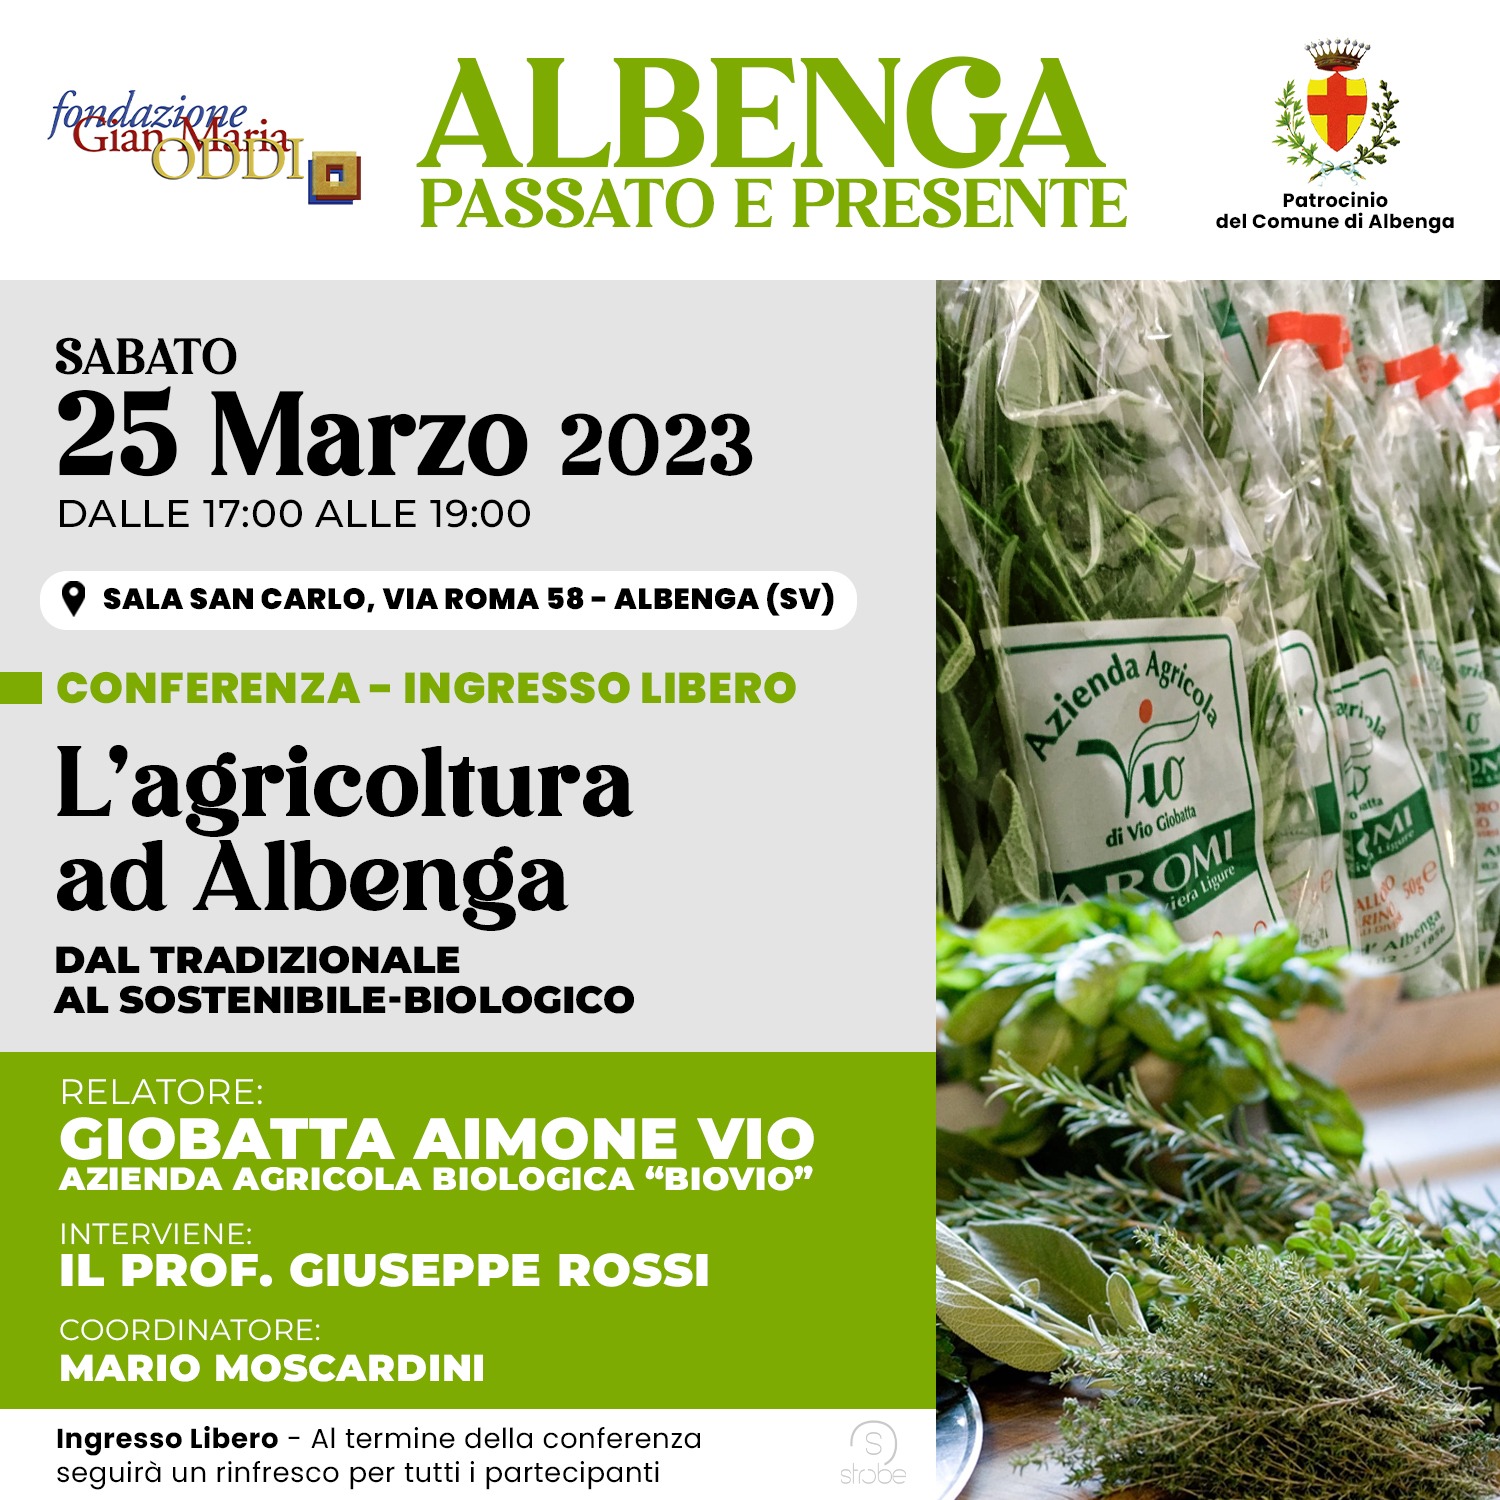 Conferenza “L’agricoltura ad Albenga: dal tradizionale al sostenibile-biologico”